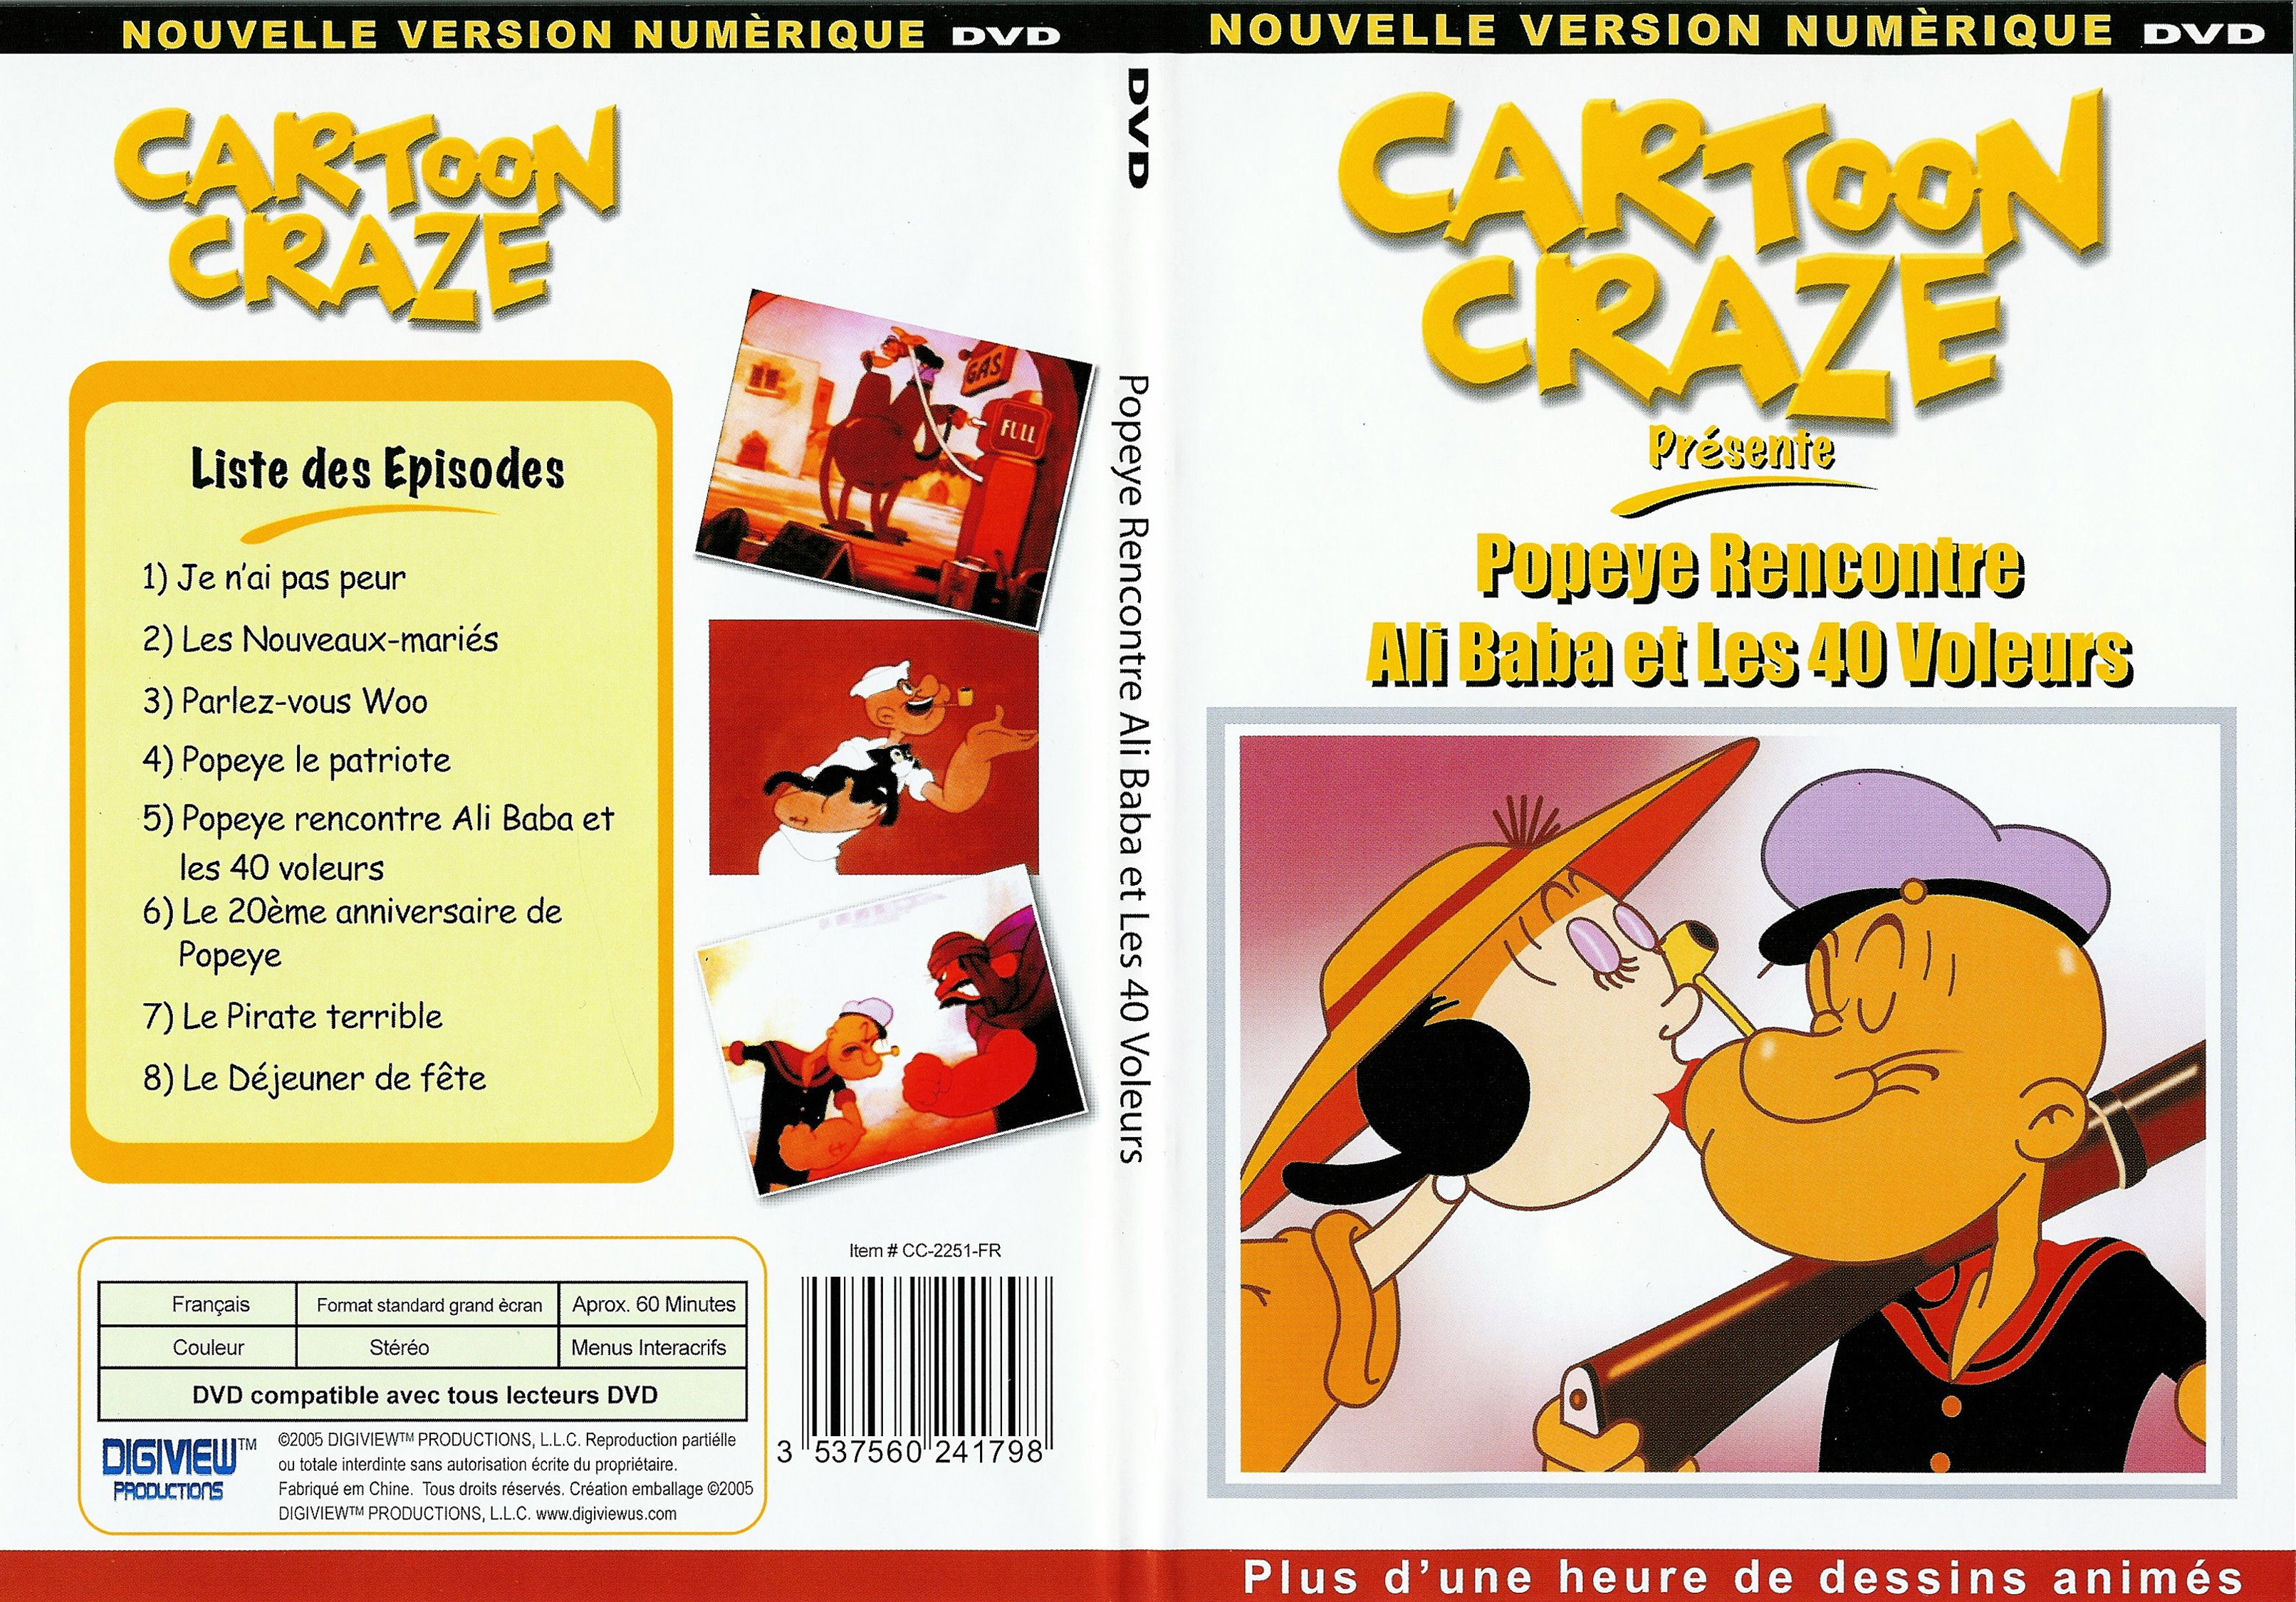 Jaquette DVD Cartoon craze - Popeye rencontre Ali Baba et les 40 voleurs